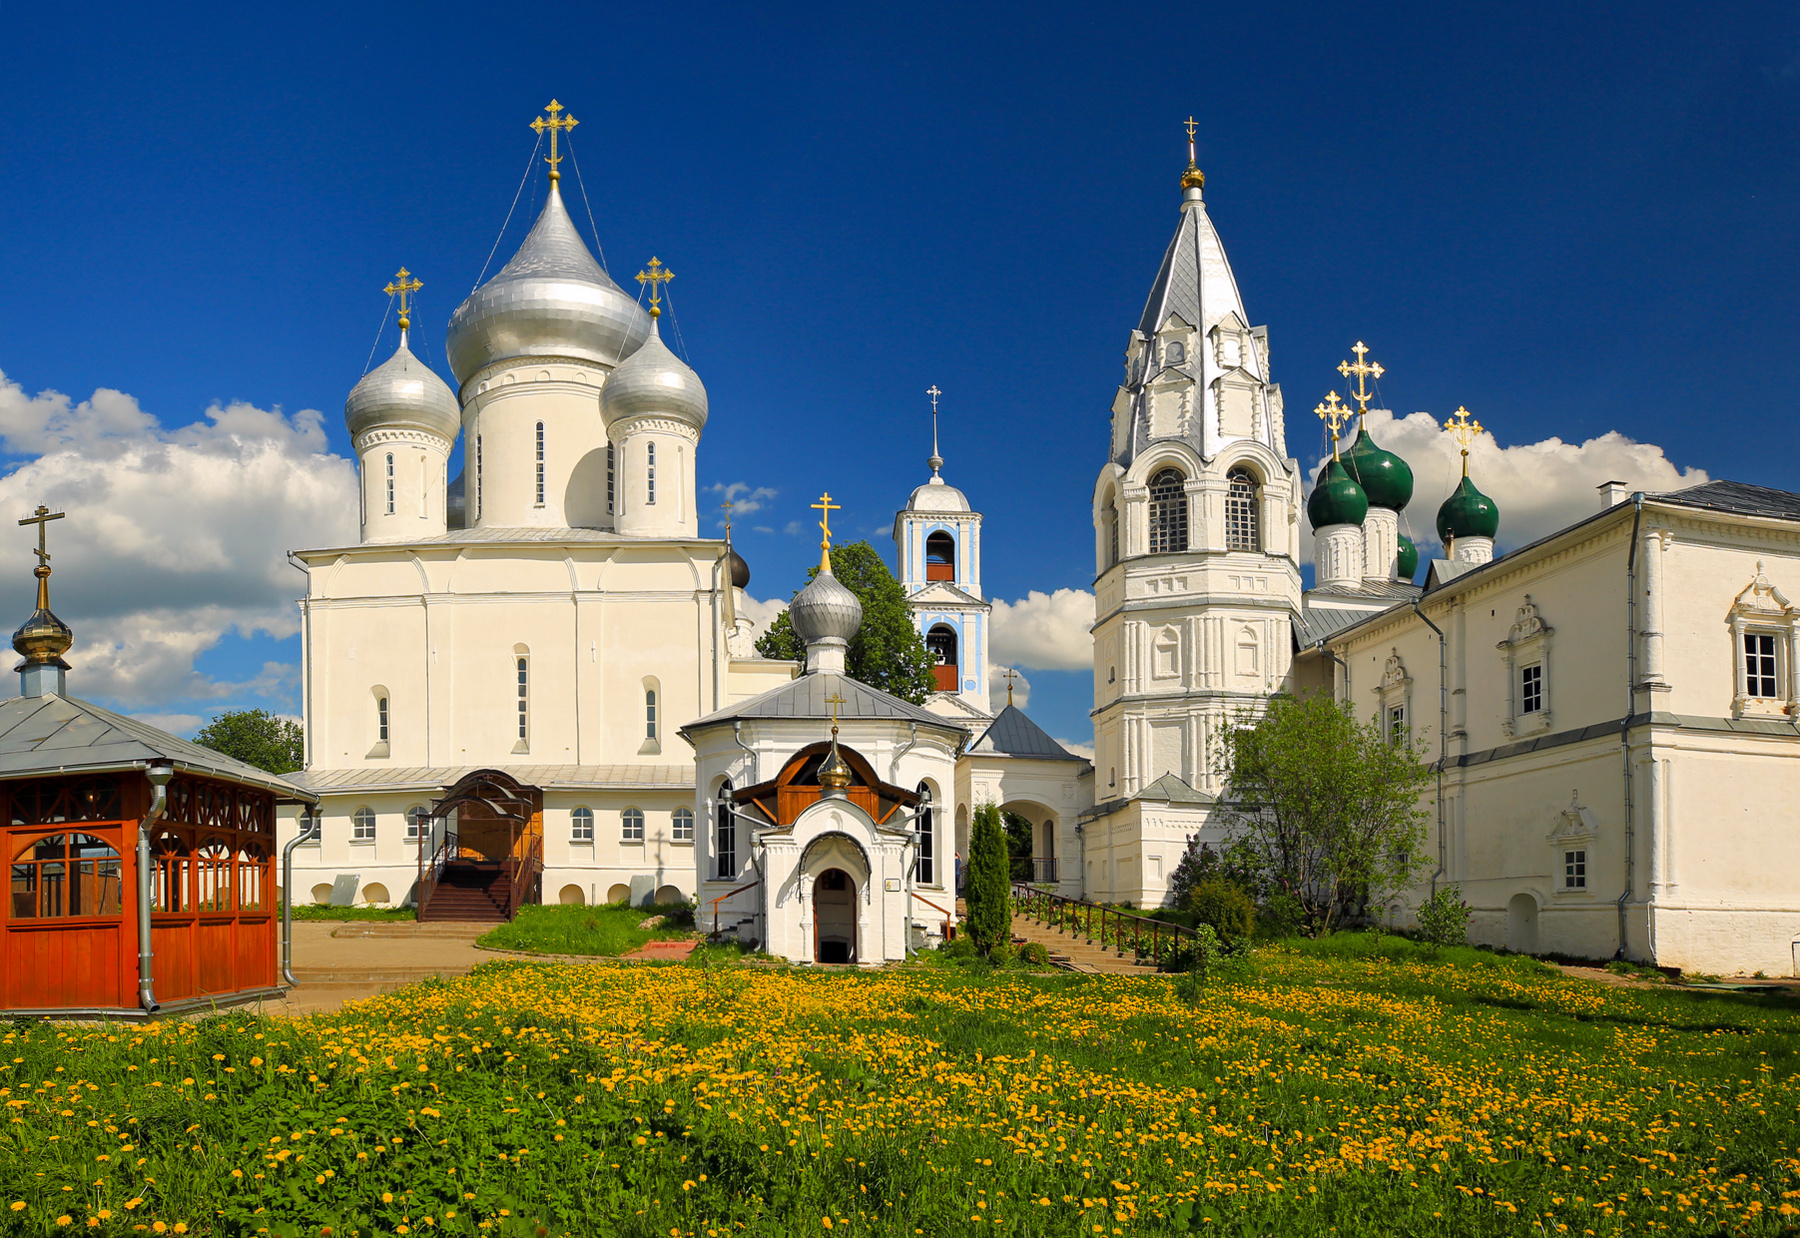 Никитский монастырь Переславль-Залесский Данилов монастырь